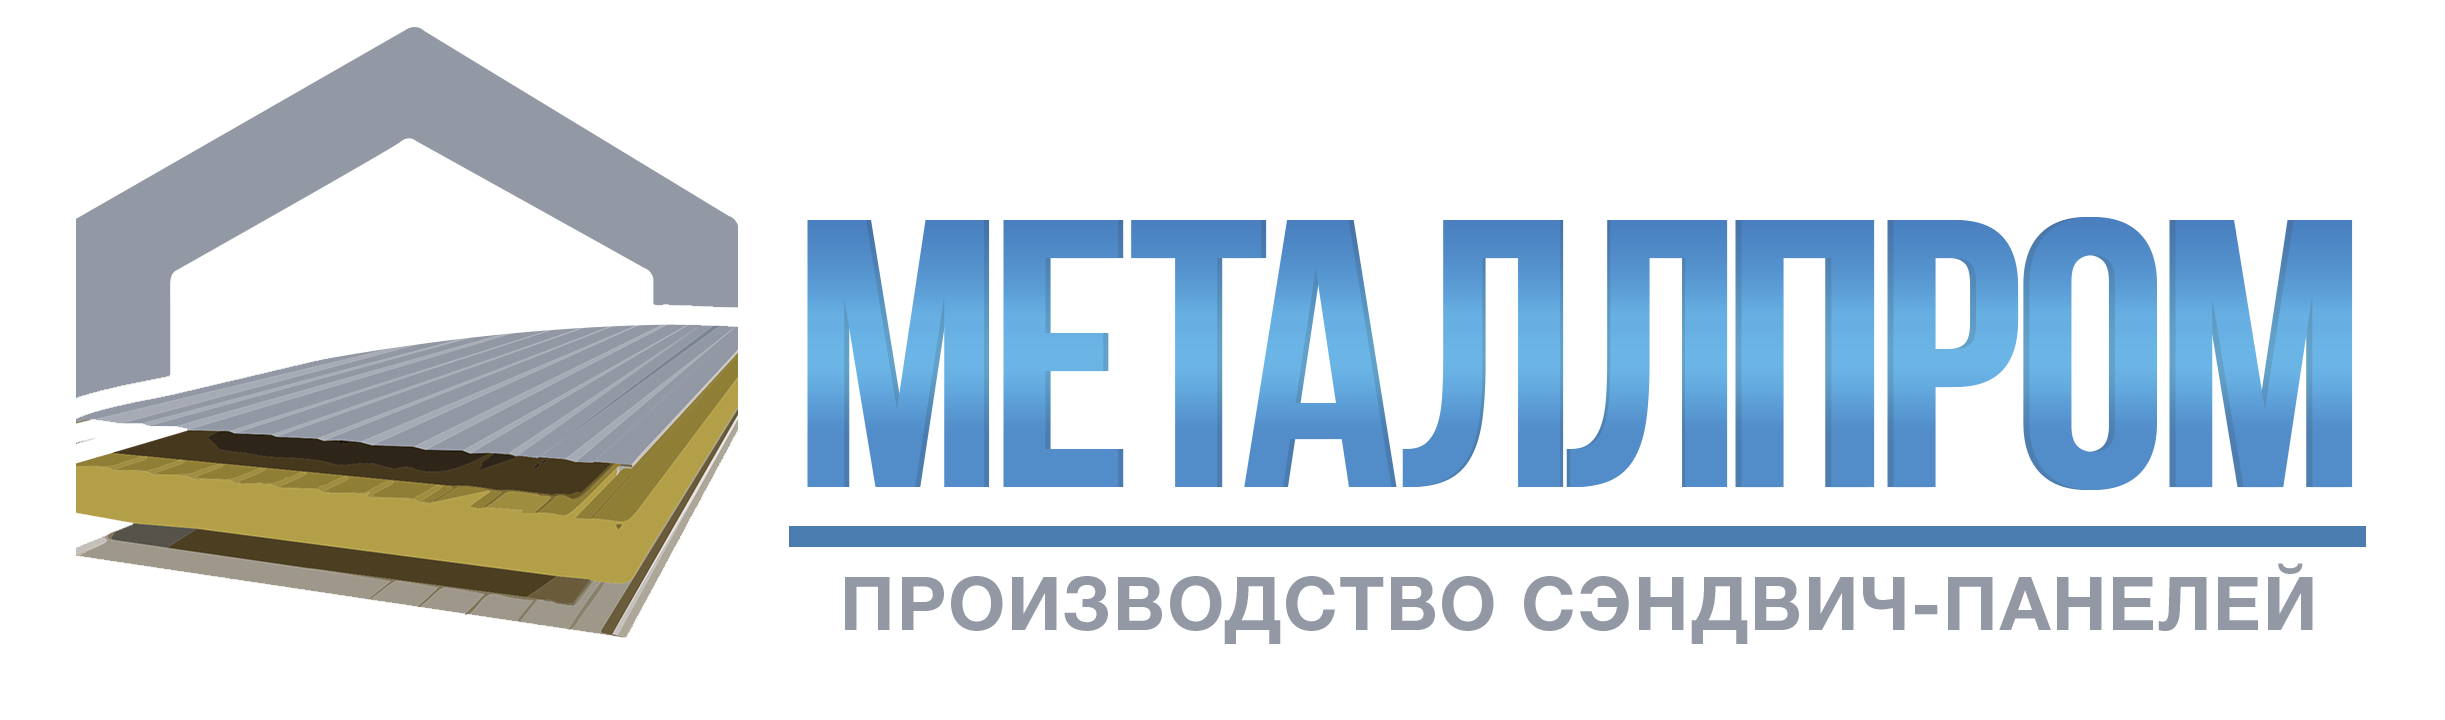 Металлпром в Подольске